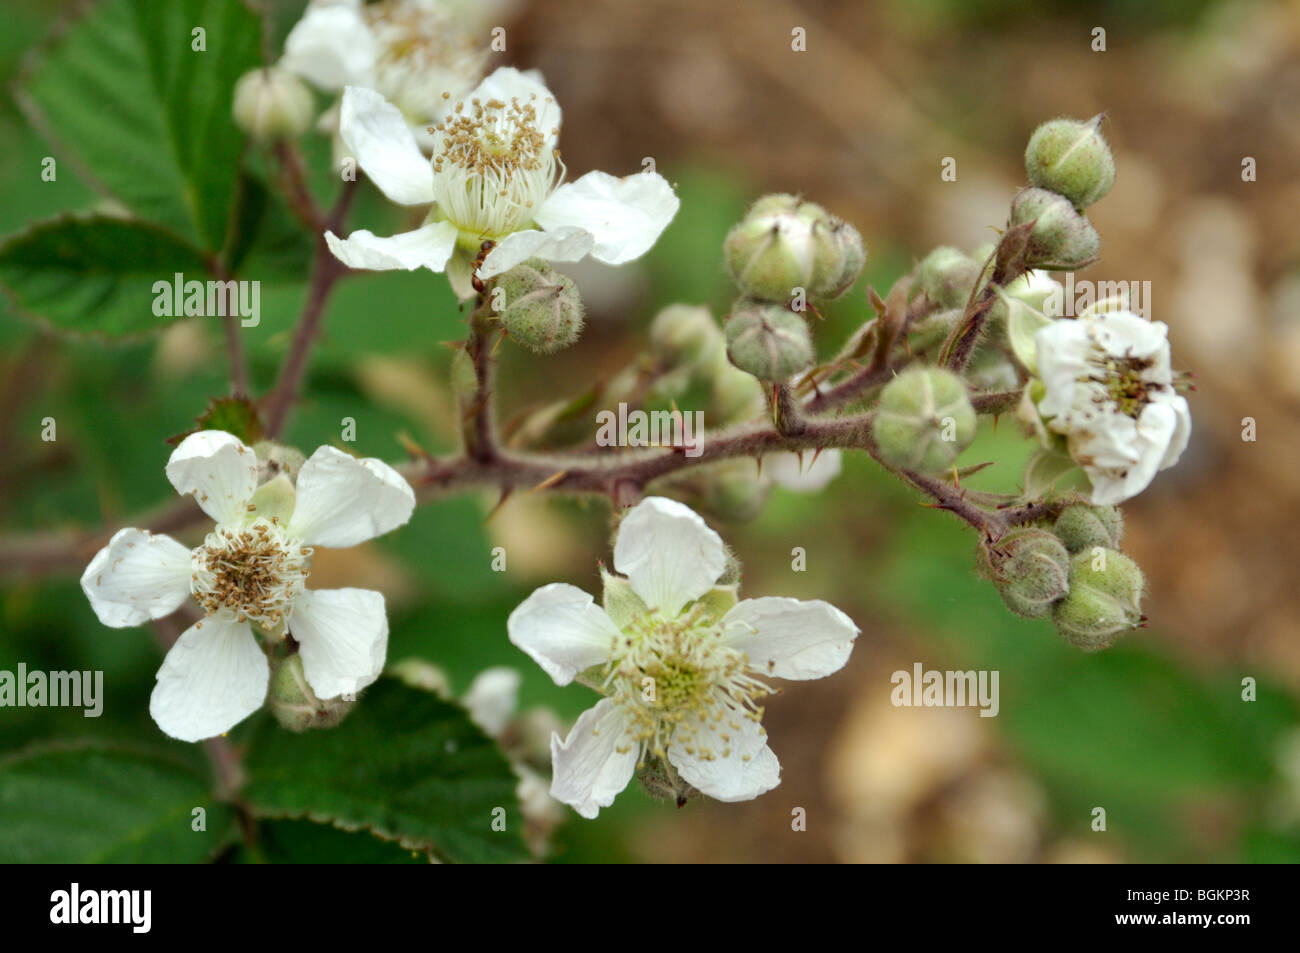 Blackberry brambles in spring. Stock Photo